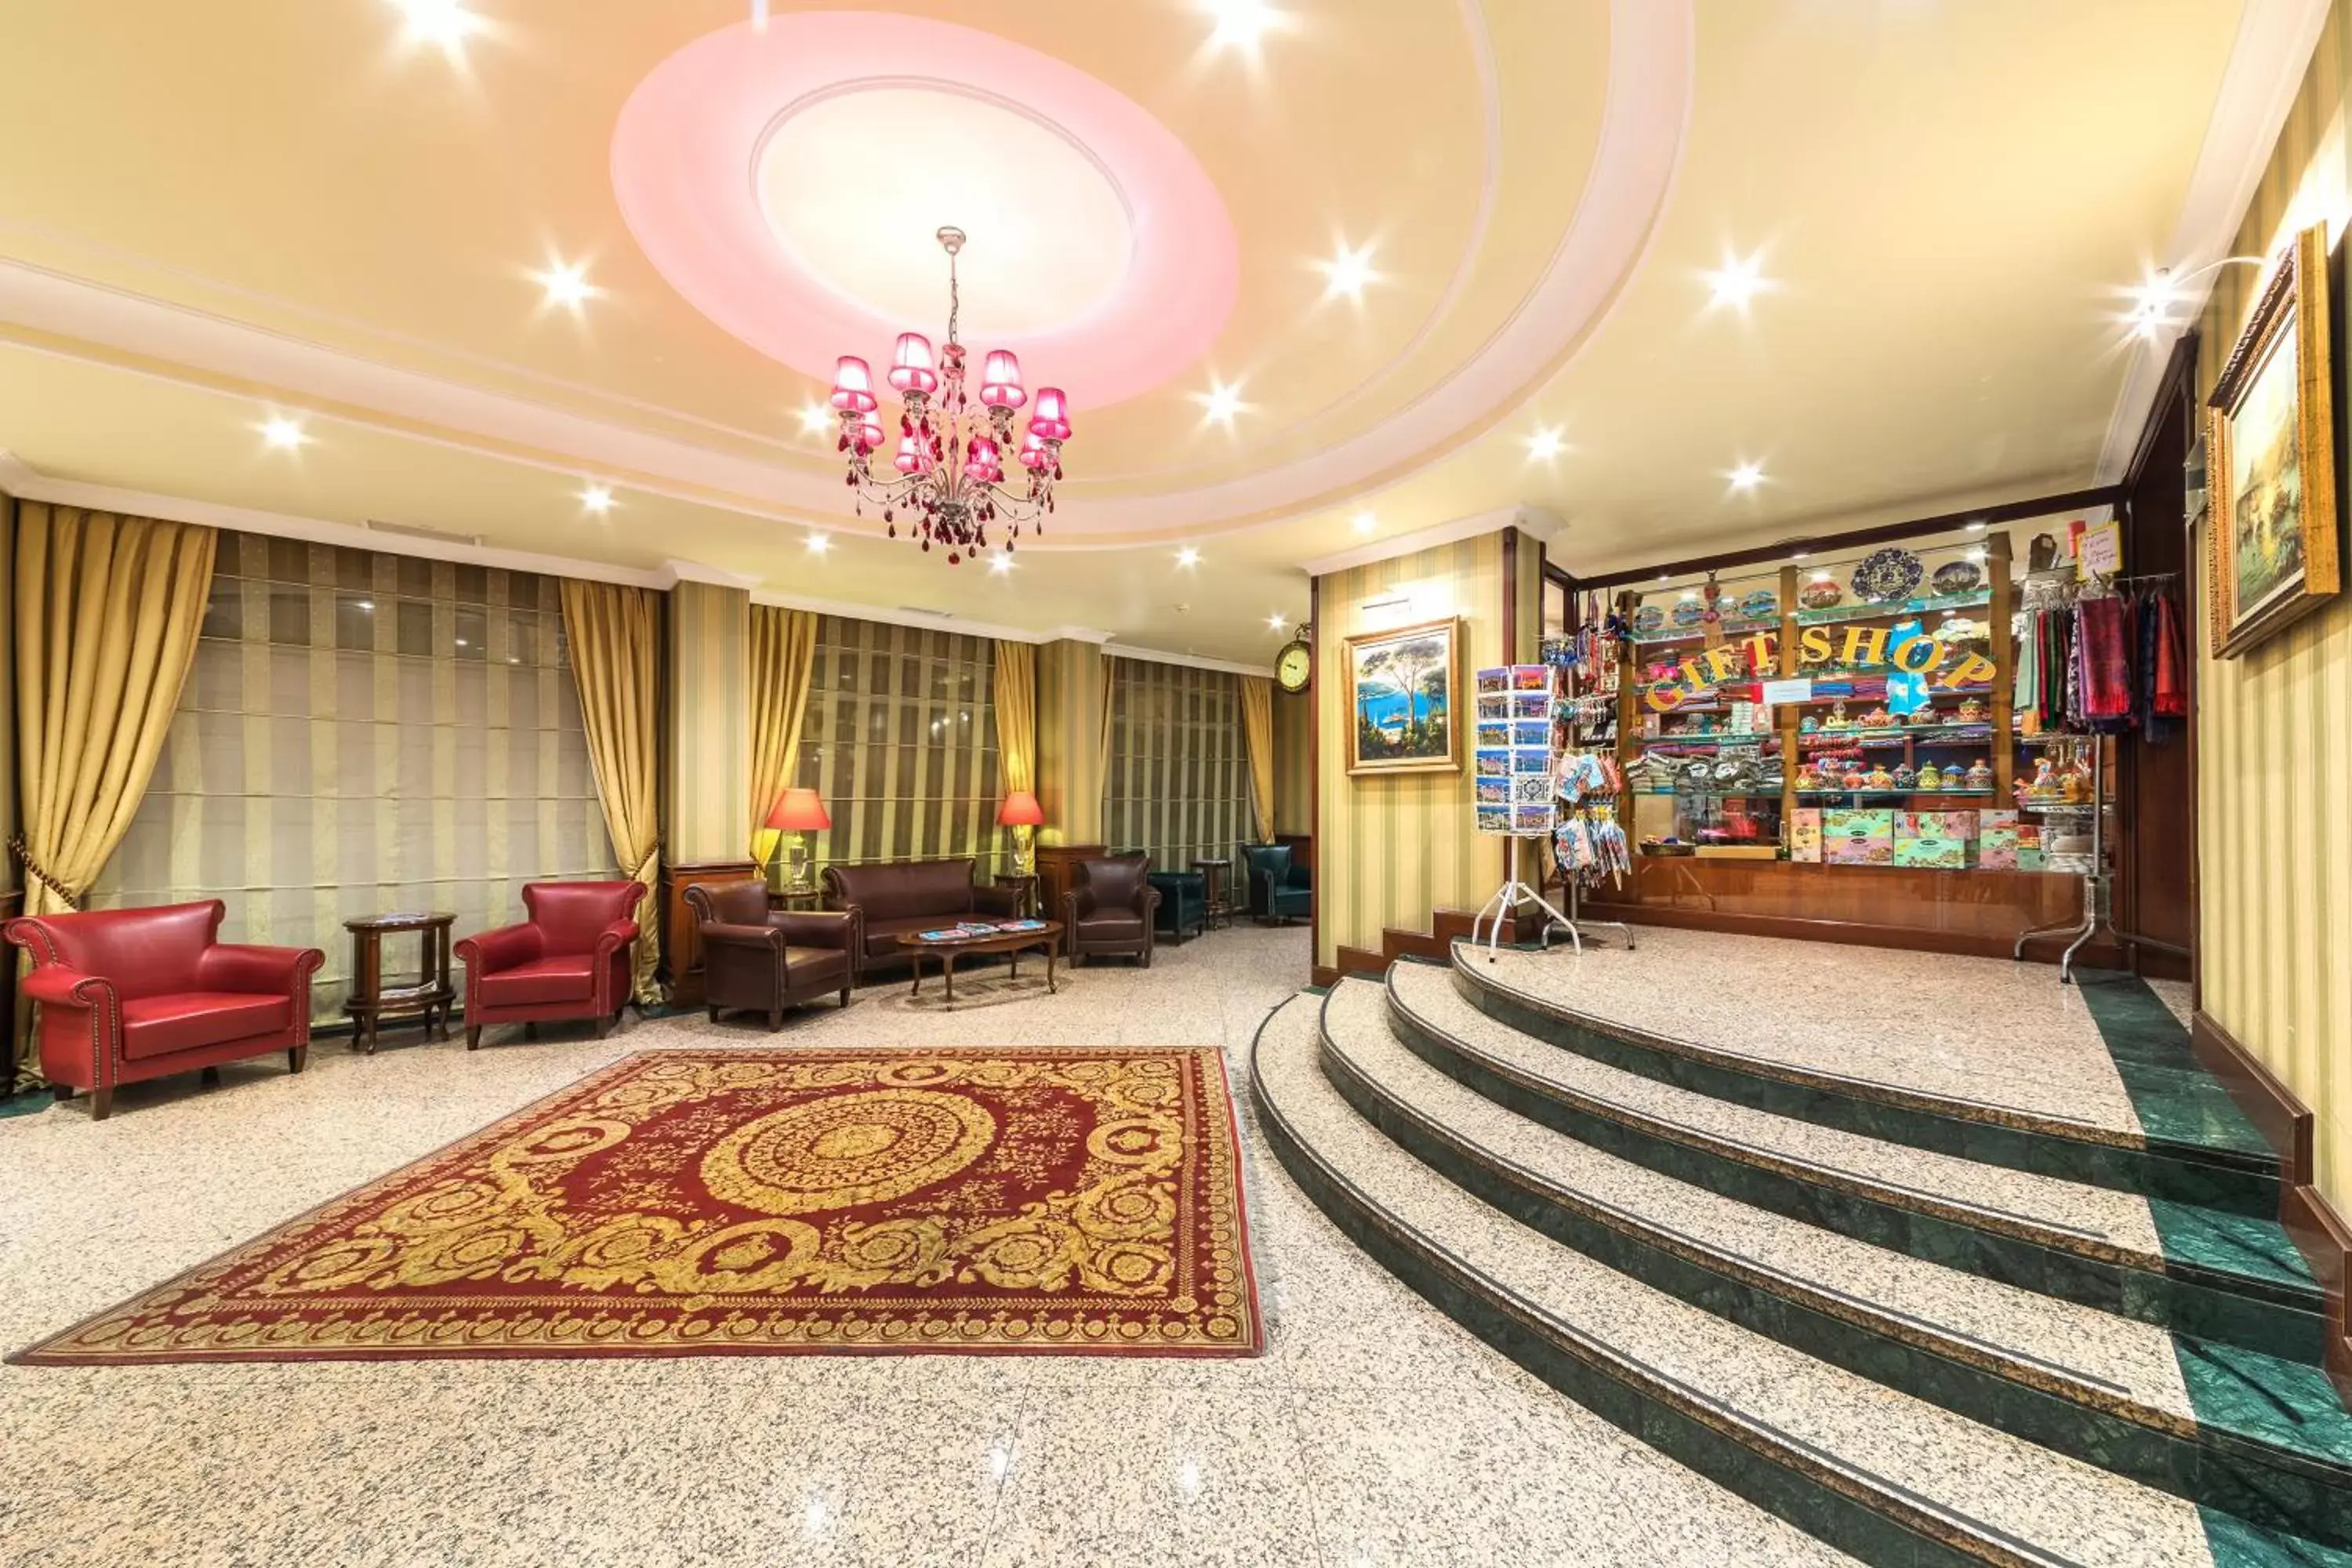 Lobby or reception, Lobby/Reception in Grand Yavuz Hotel Sultanahmet